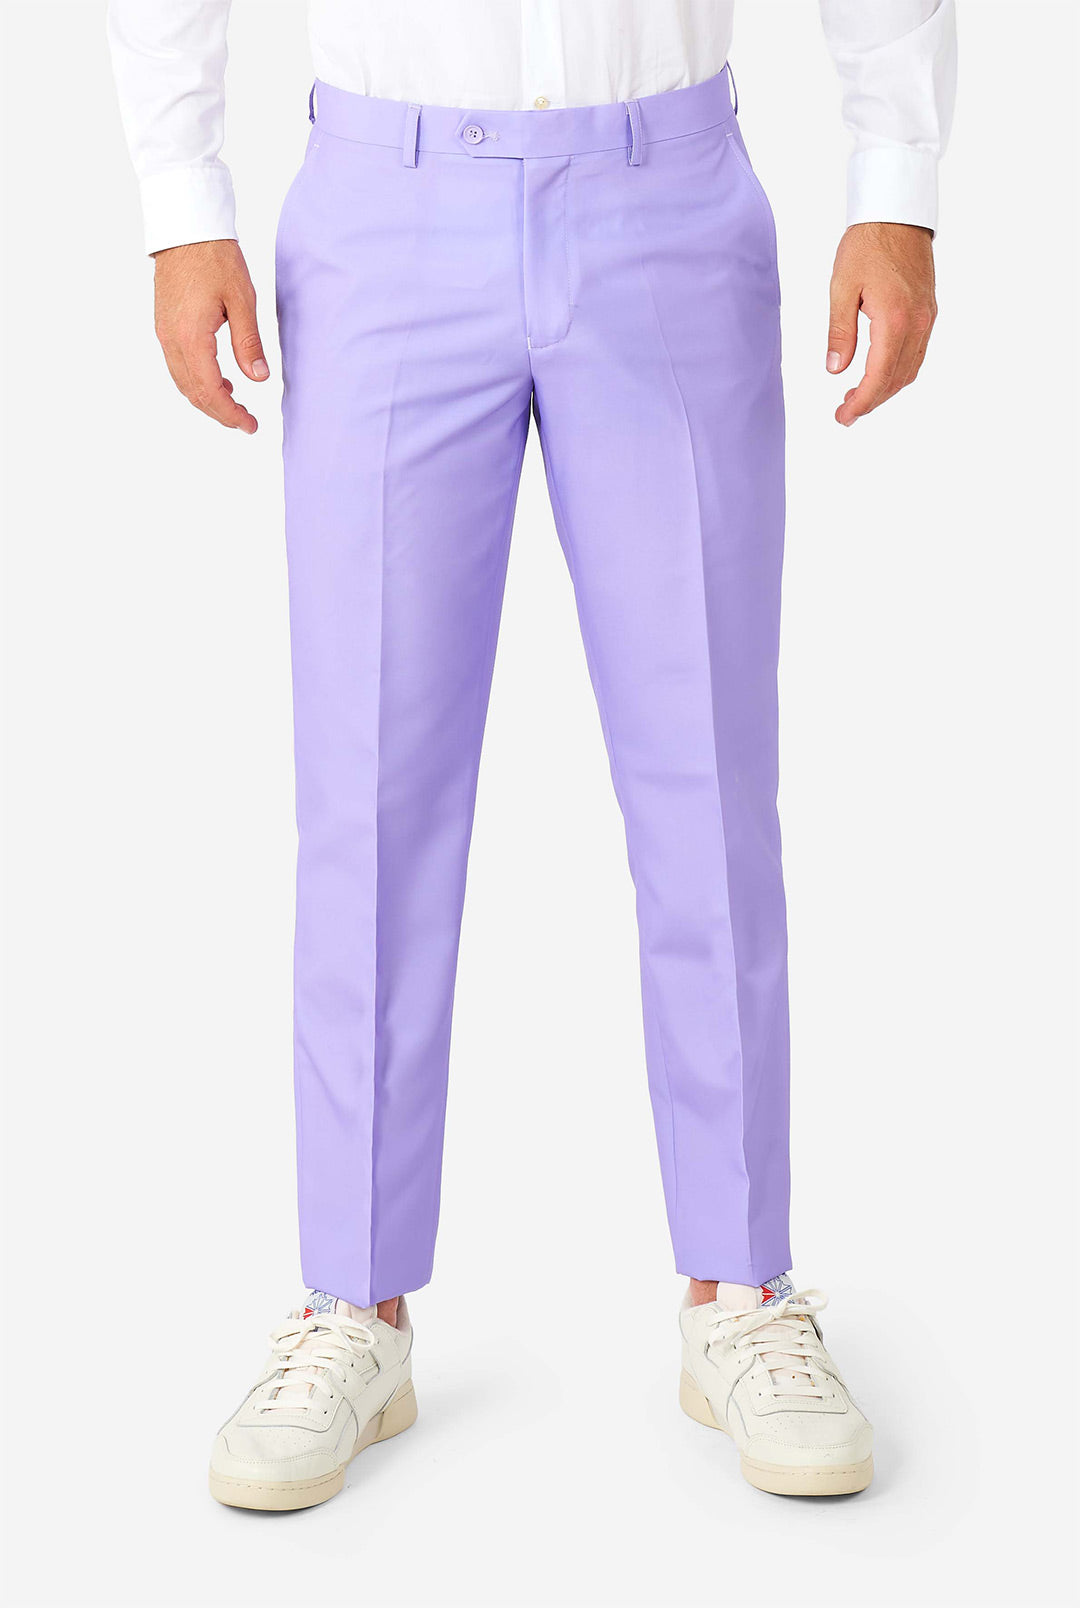 Lavish Lavender | Purple Lavender Colored Mens Suit | OppoSuits